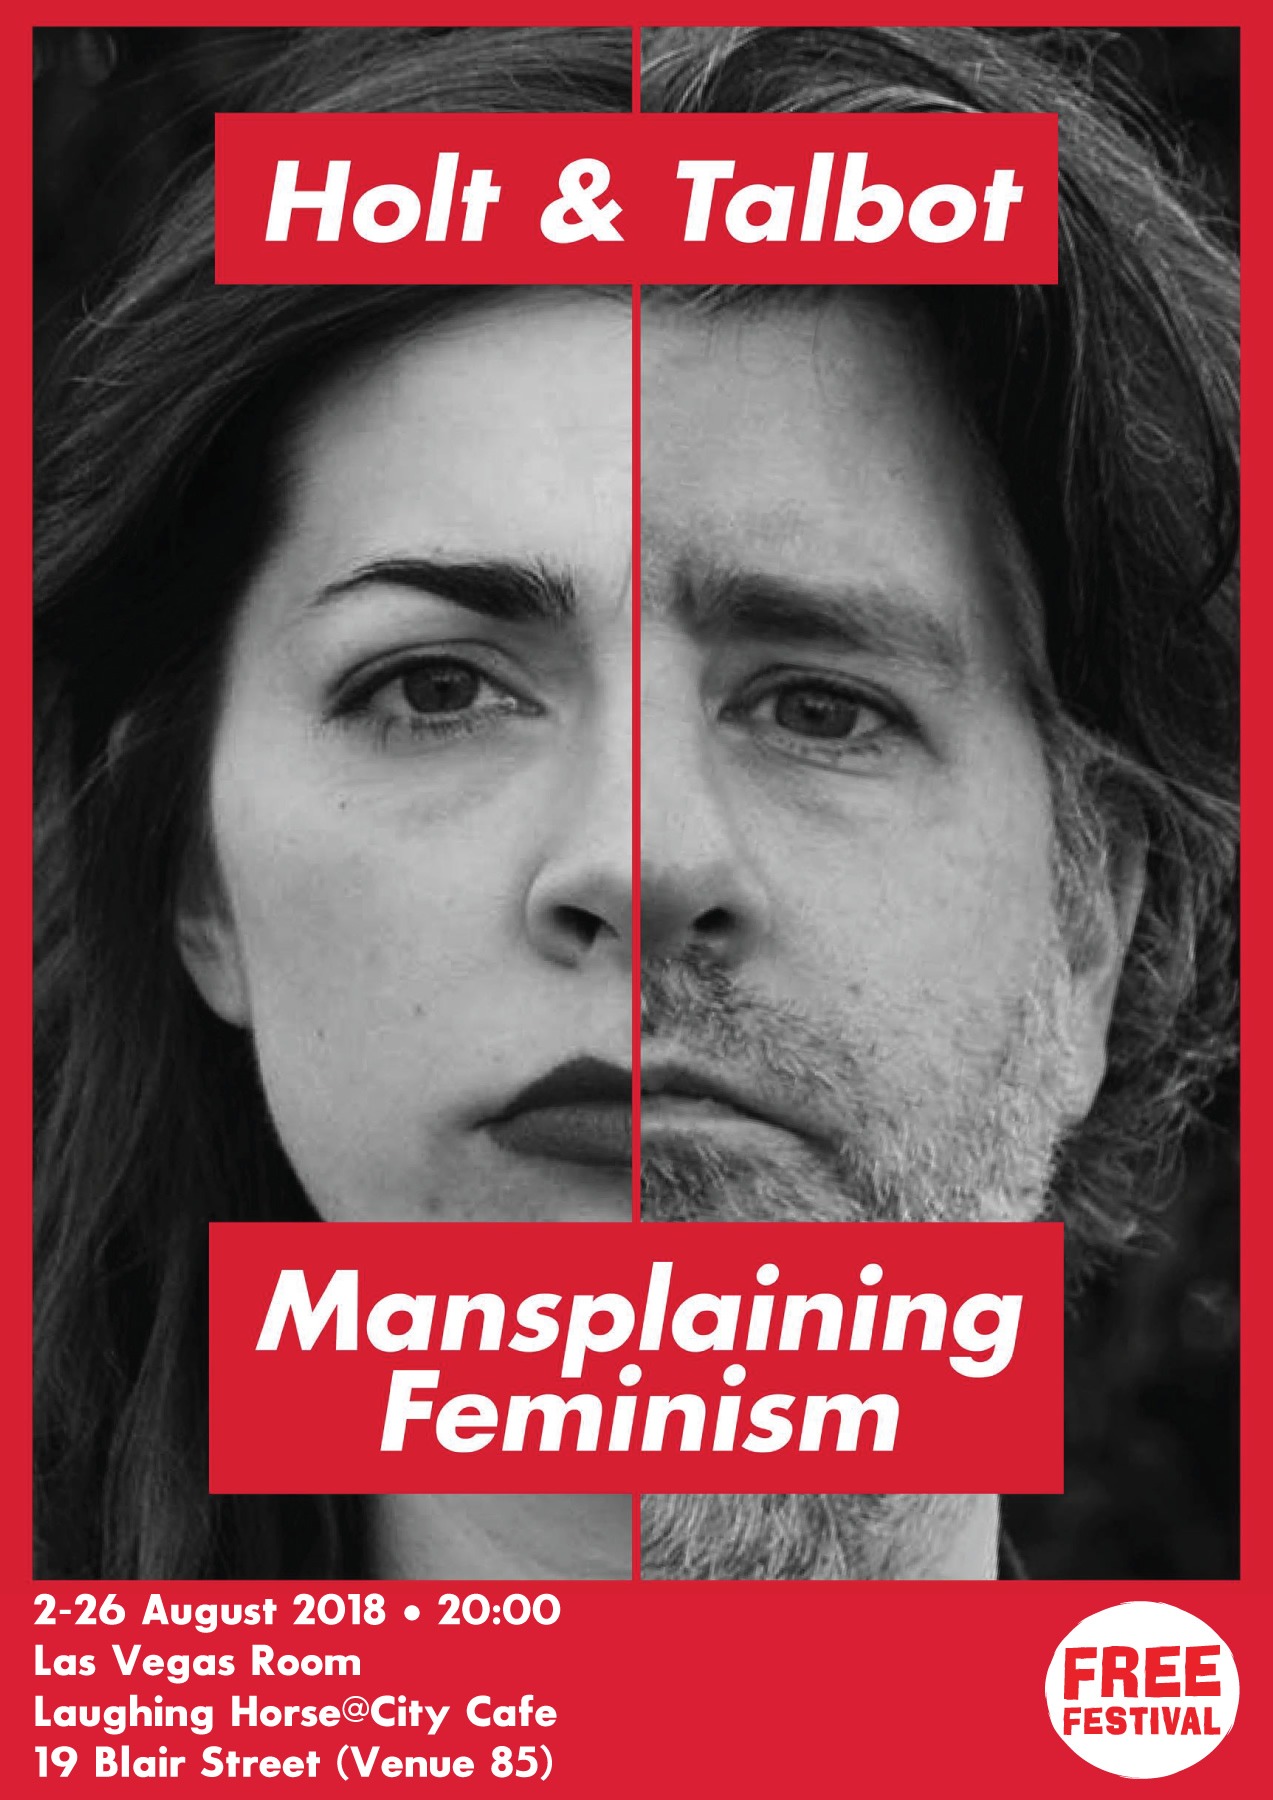 The poster for Holt and Talbot: Mansplaining Feminism